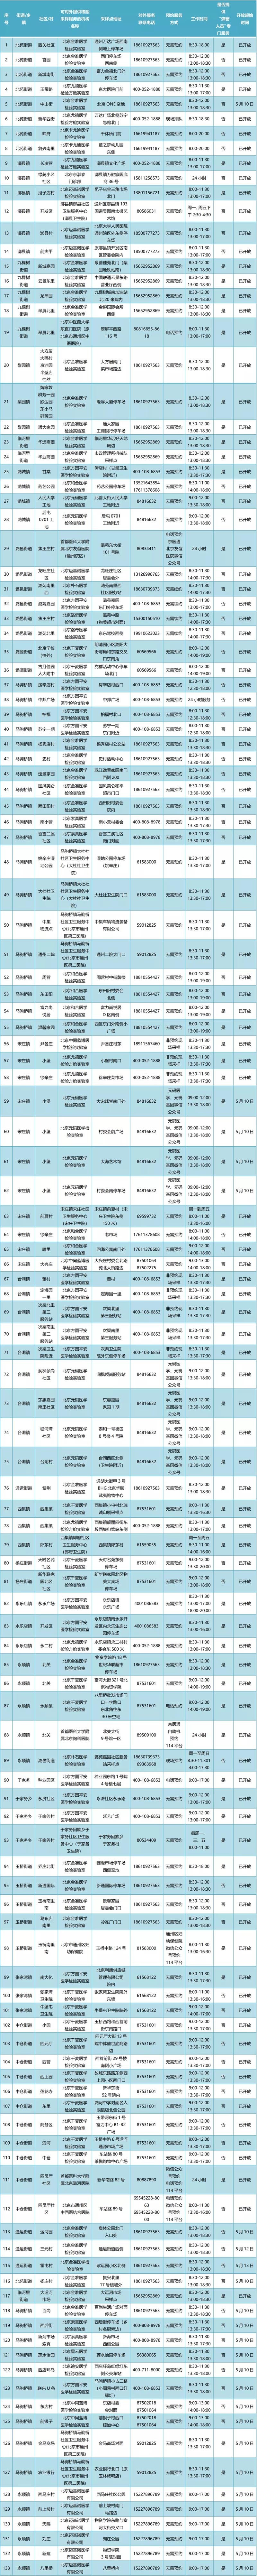 增至133个 北京通州免费常态化核酸检测点最新位置公布